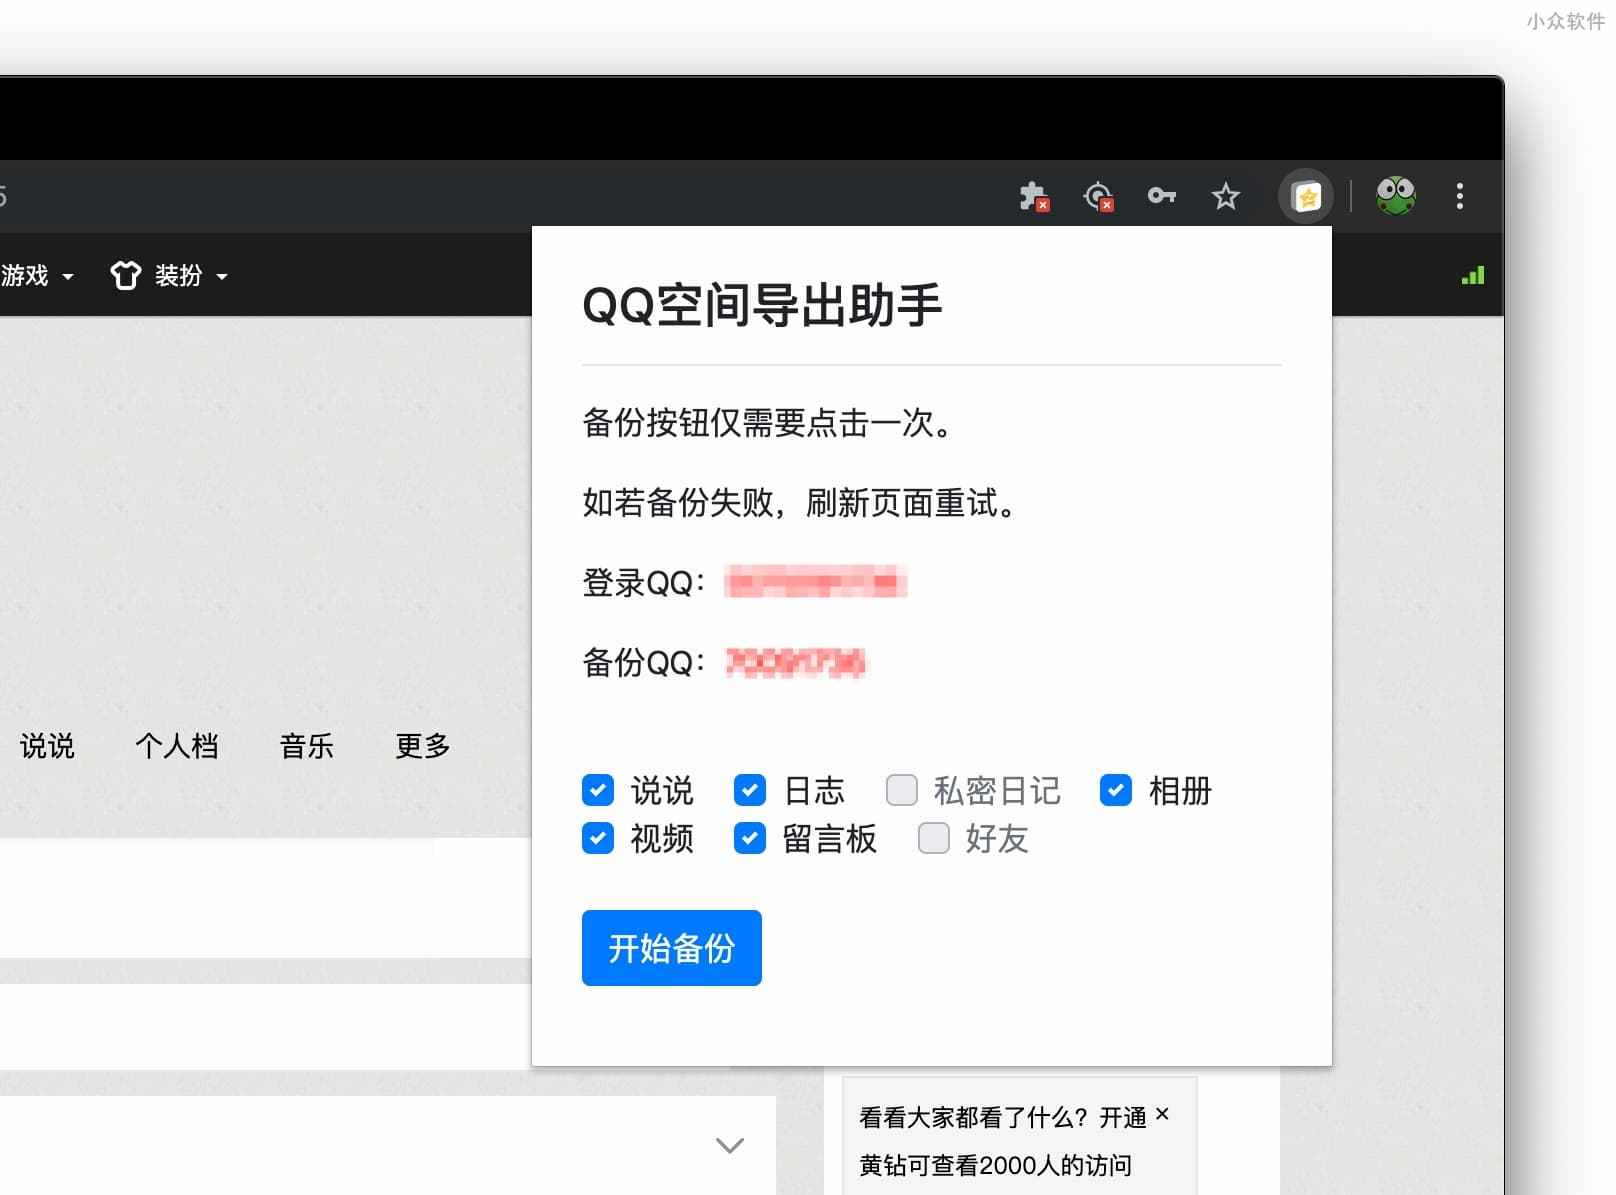 QQ空间导出助手 - 可导出说说、日志、私密日记、相册、视频、留言板、QQ 好友列表[Chrome] 2